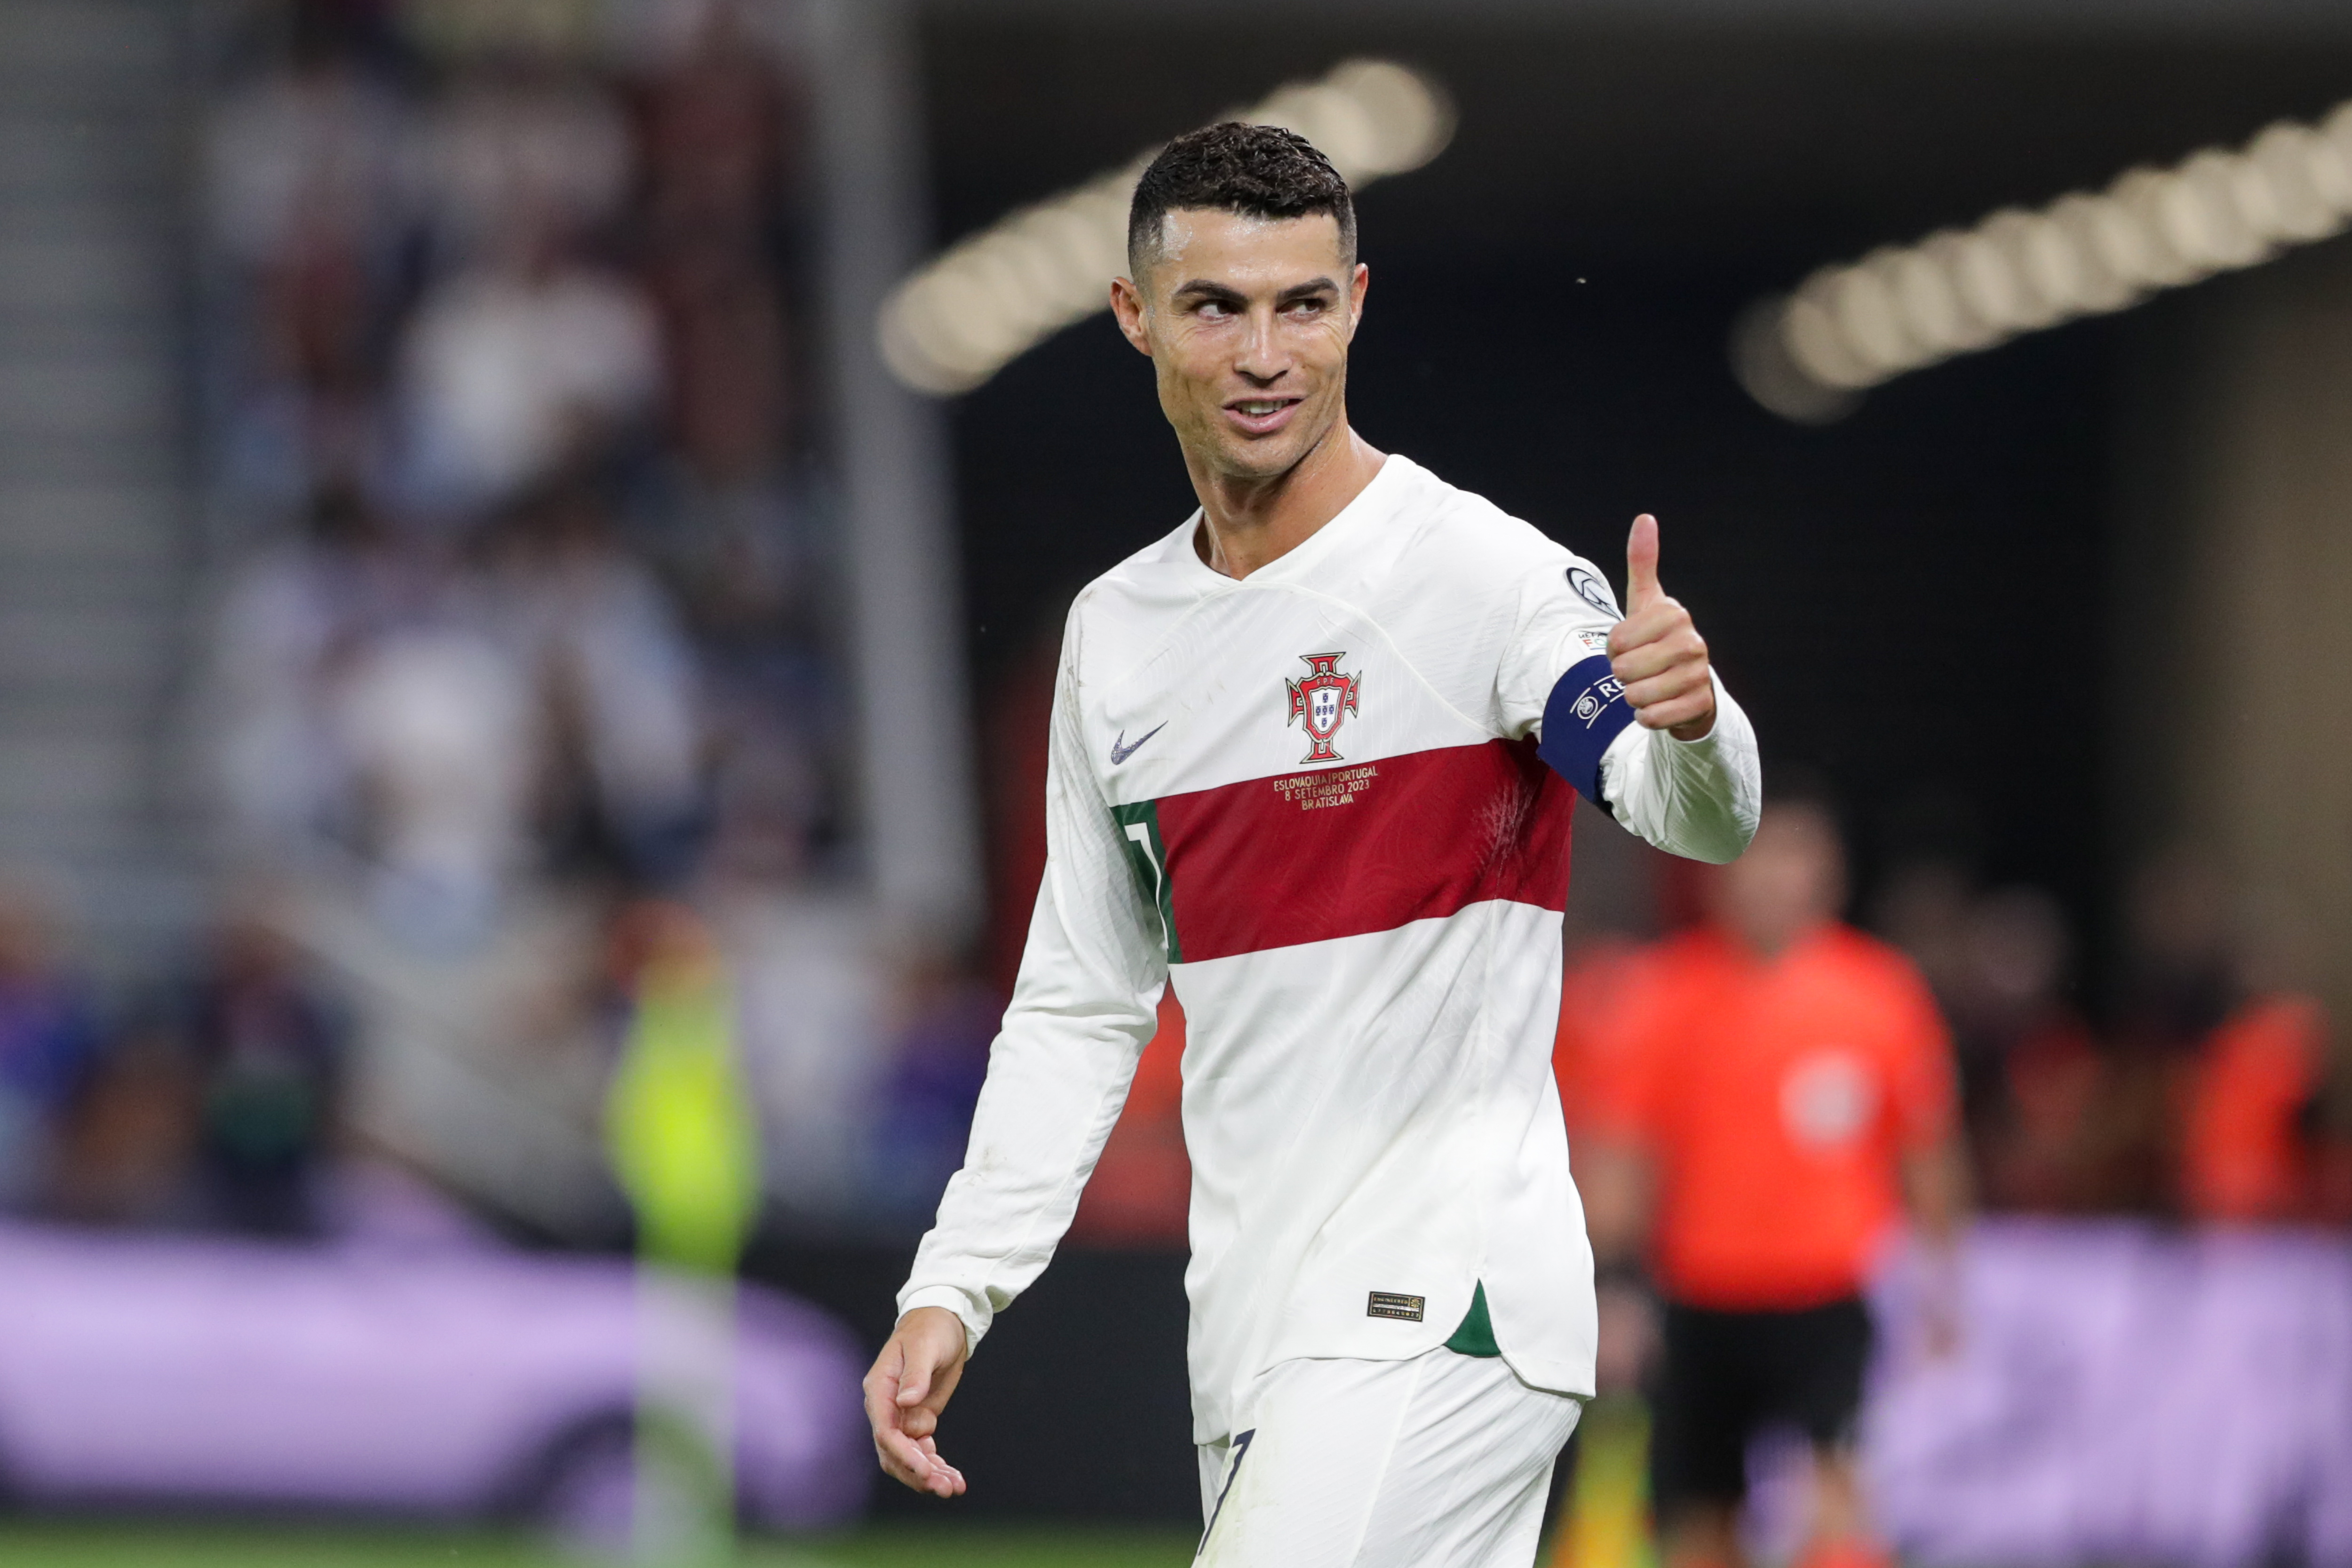 Cristiano Ronaldo hails Lionel Messi: 'The rivalry is over' - NBC Sports